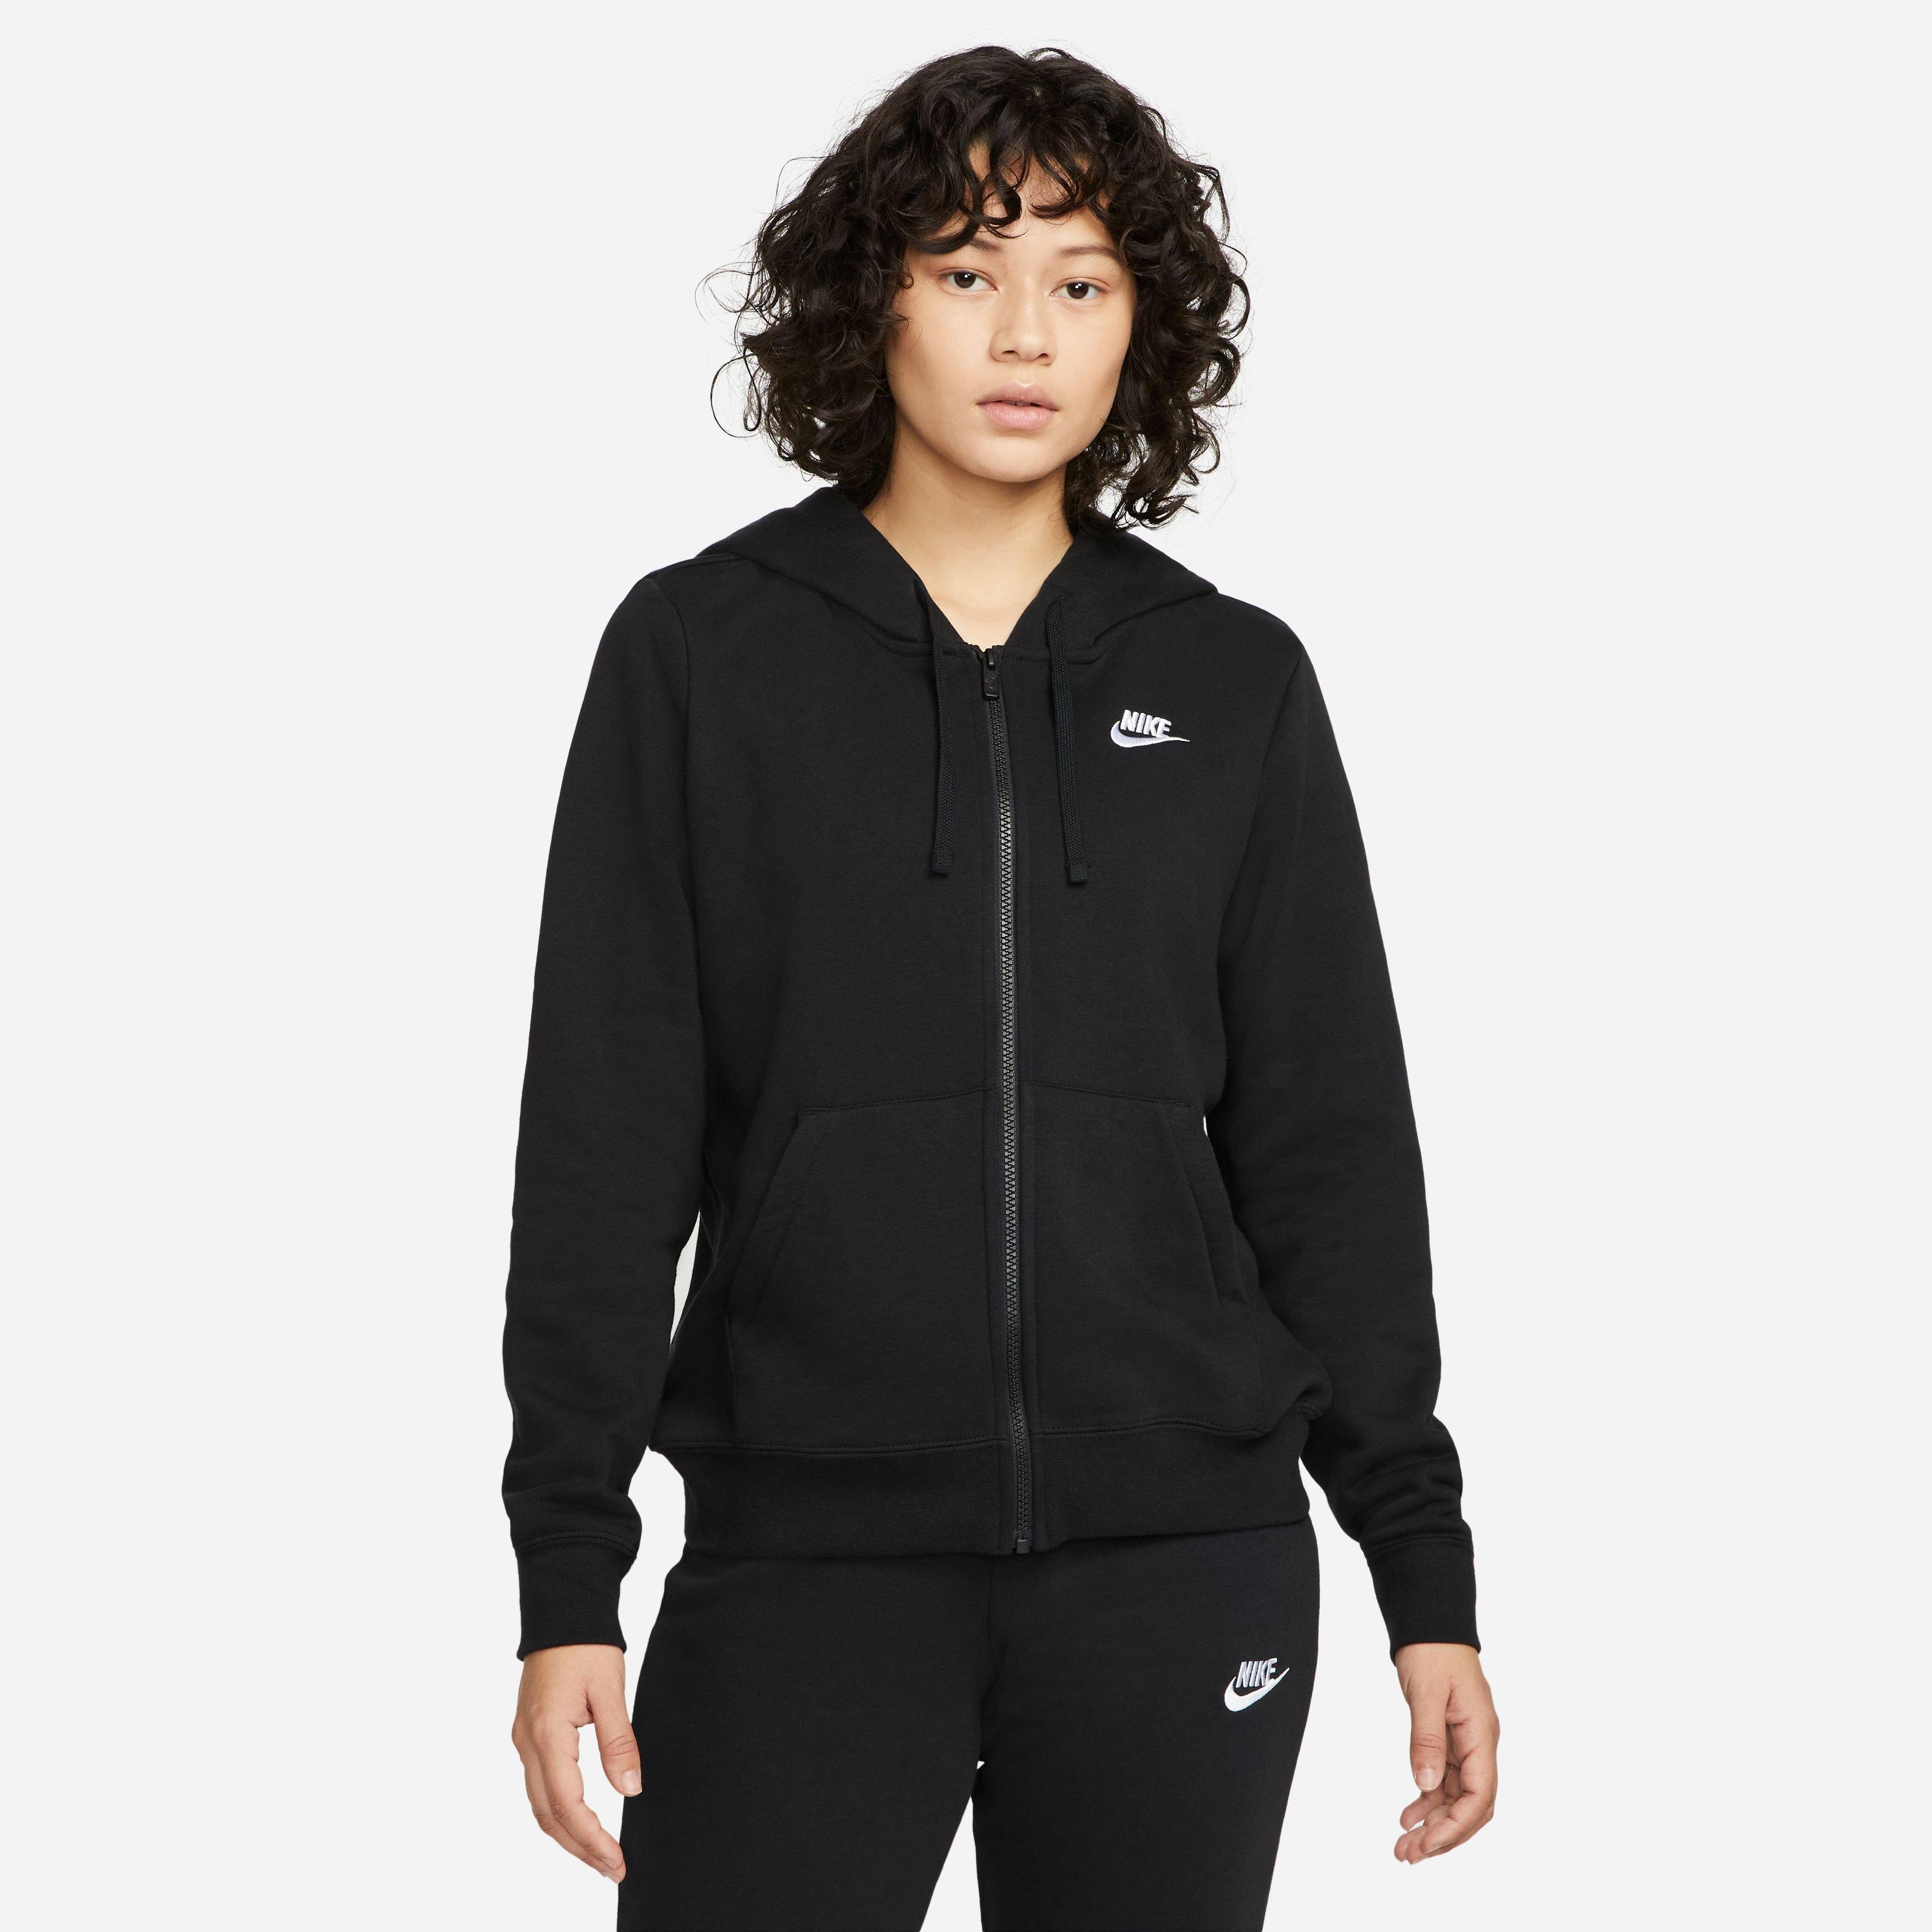 Nike Training Warm-Up Jacket, Womens